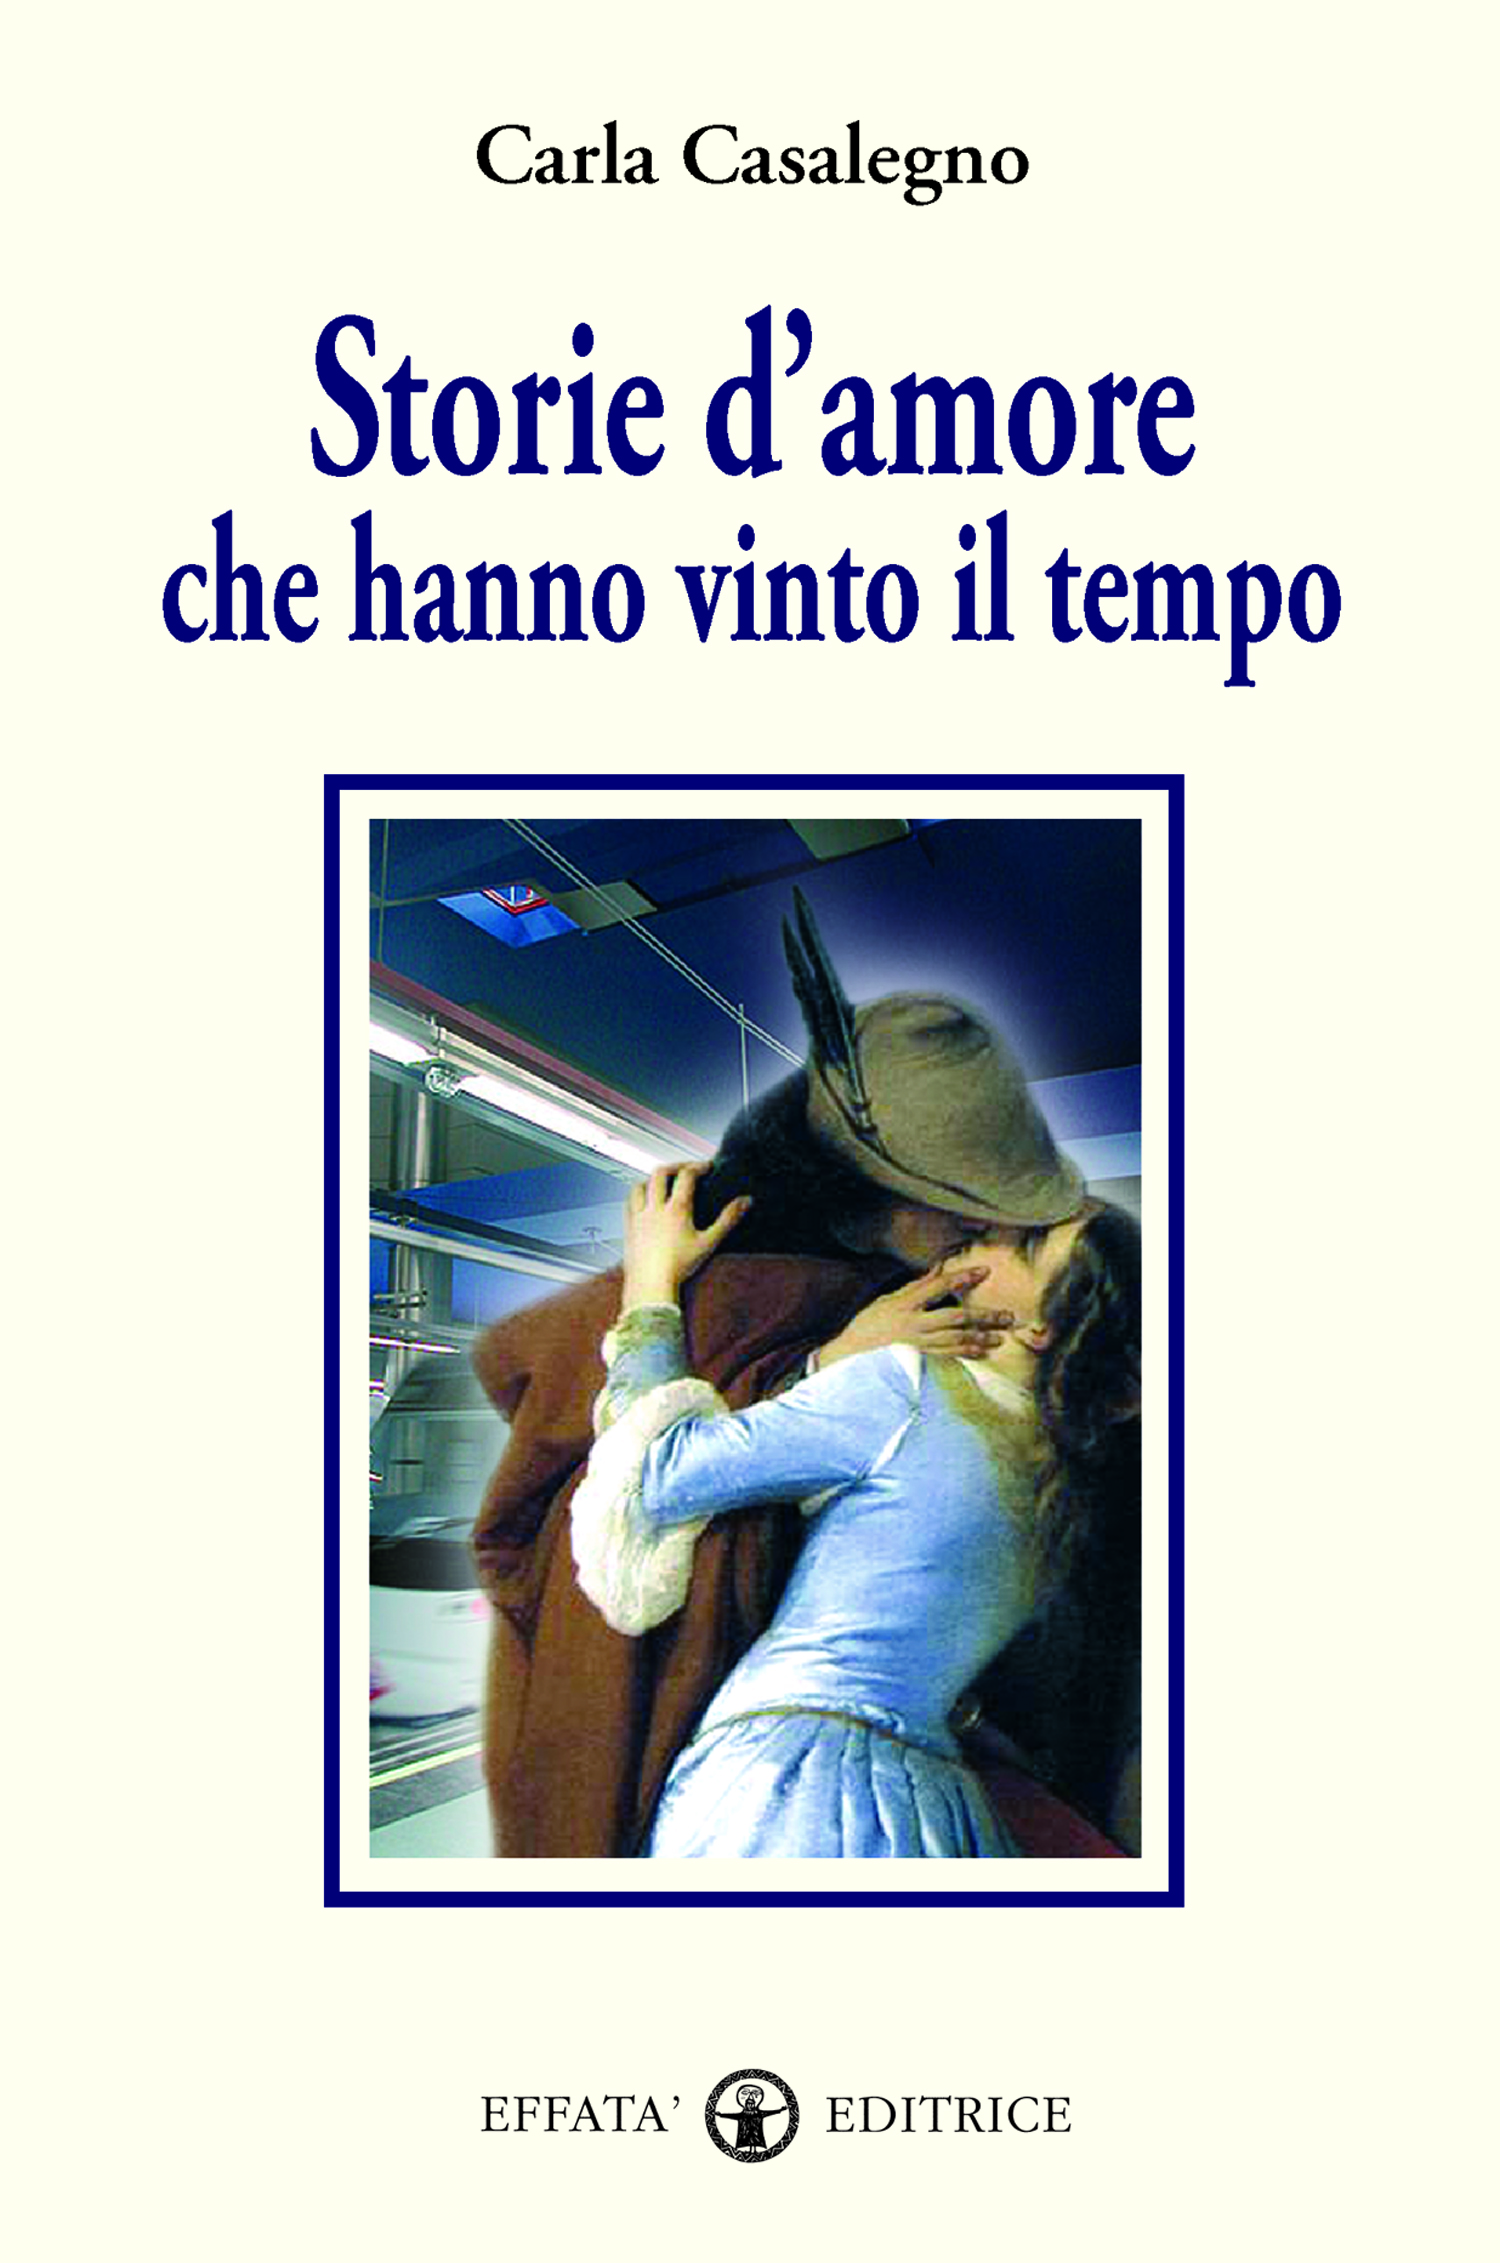 Libro «Storie d'amore che hanno vinto il tempo» di Carla Casalegno ~ Effatà  Editrice